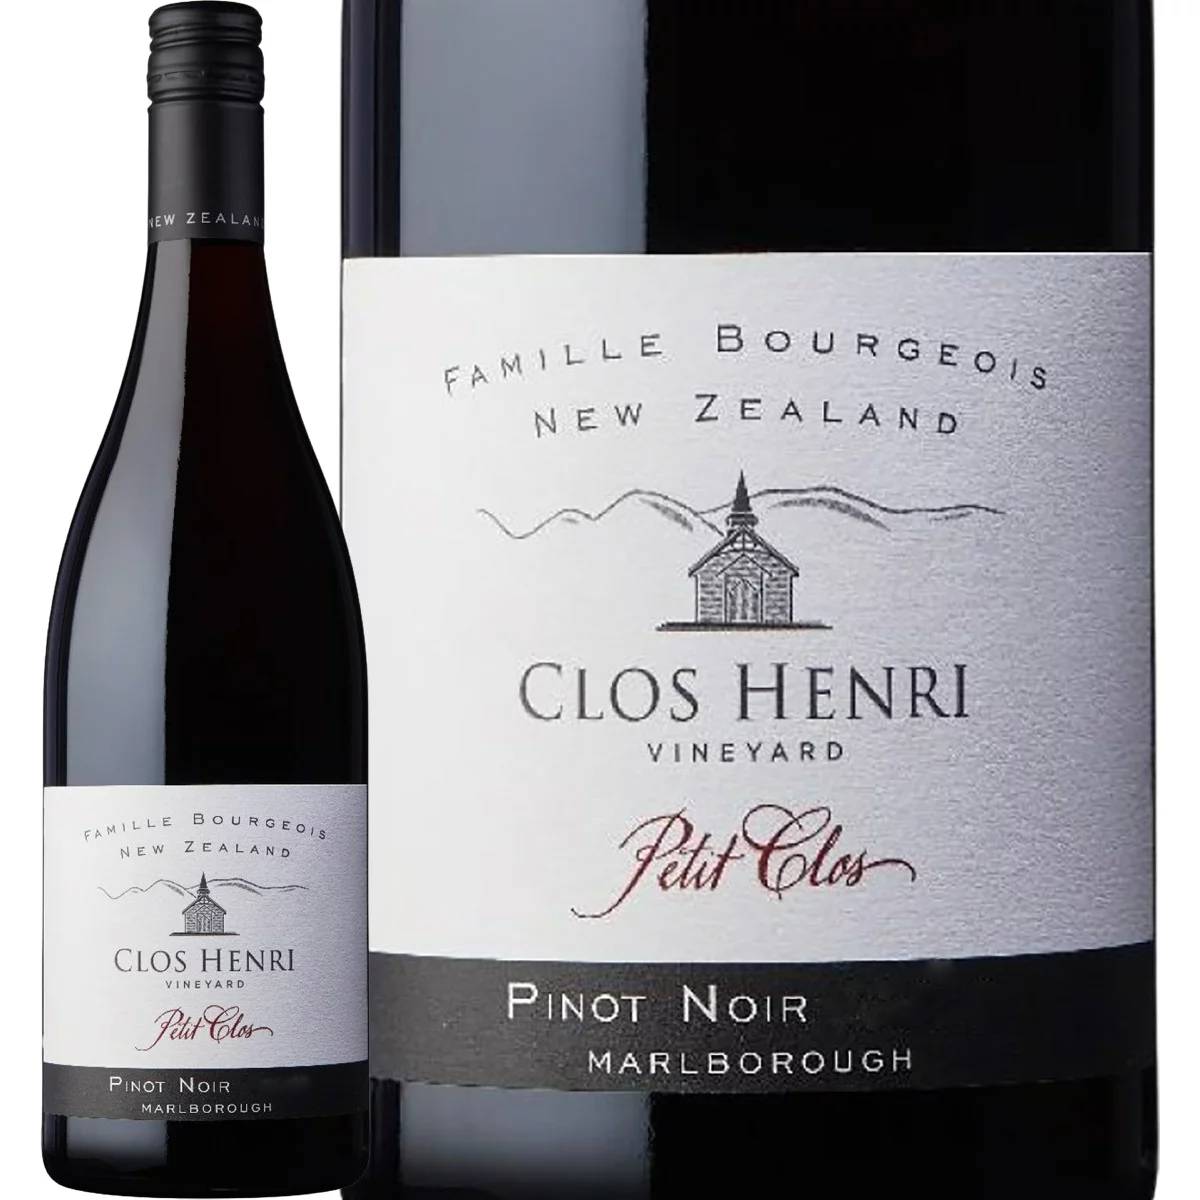 クロ・アンリ・プティ・クロ・ピノ・ノワール2020【ニュージーランド】【マールボロ】【赤ワイン】【750ml】【Clos Henri】【Henri Bourgeois】【超特価】